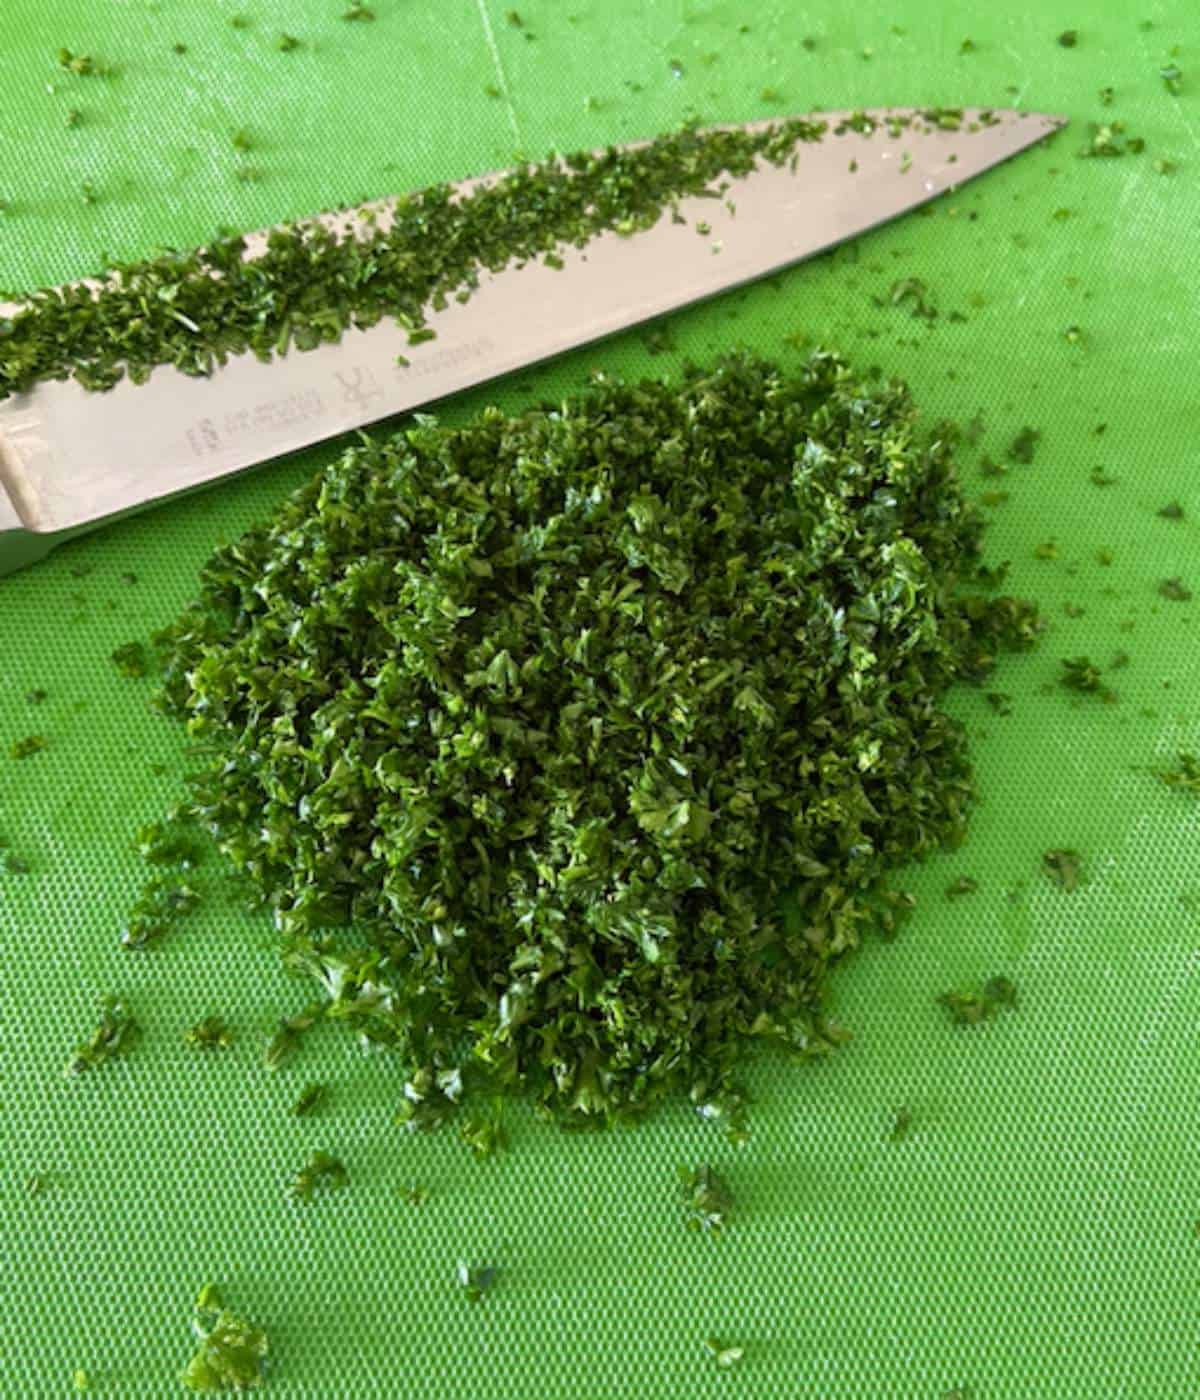 Minced parsley on cutting board.